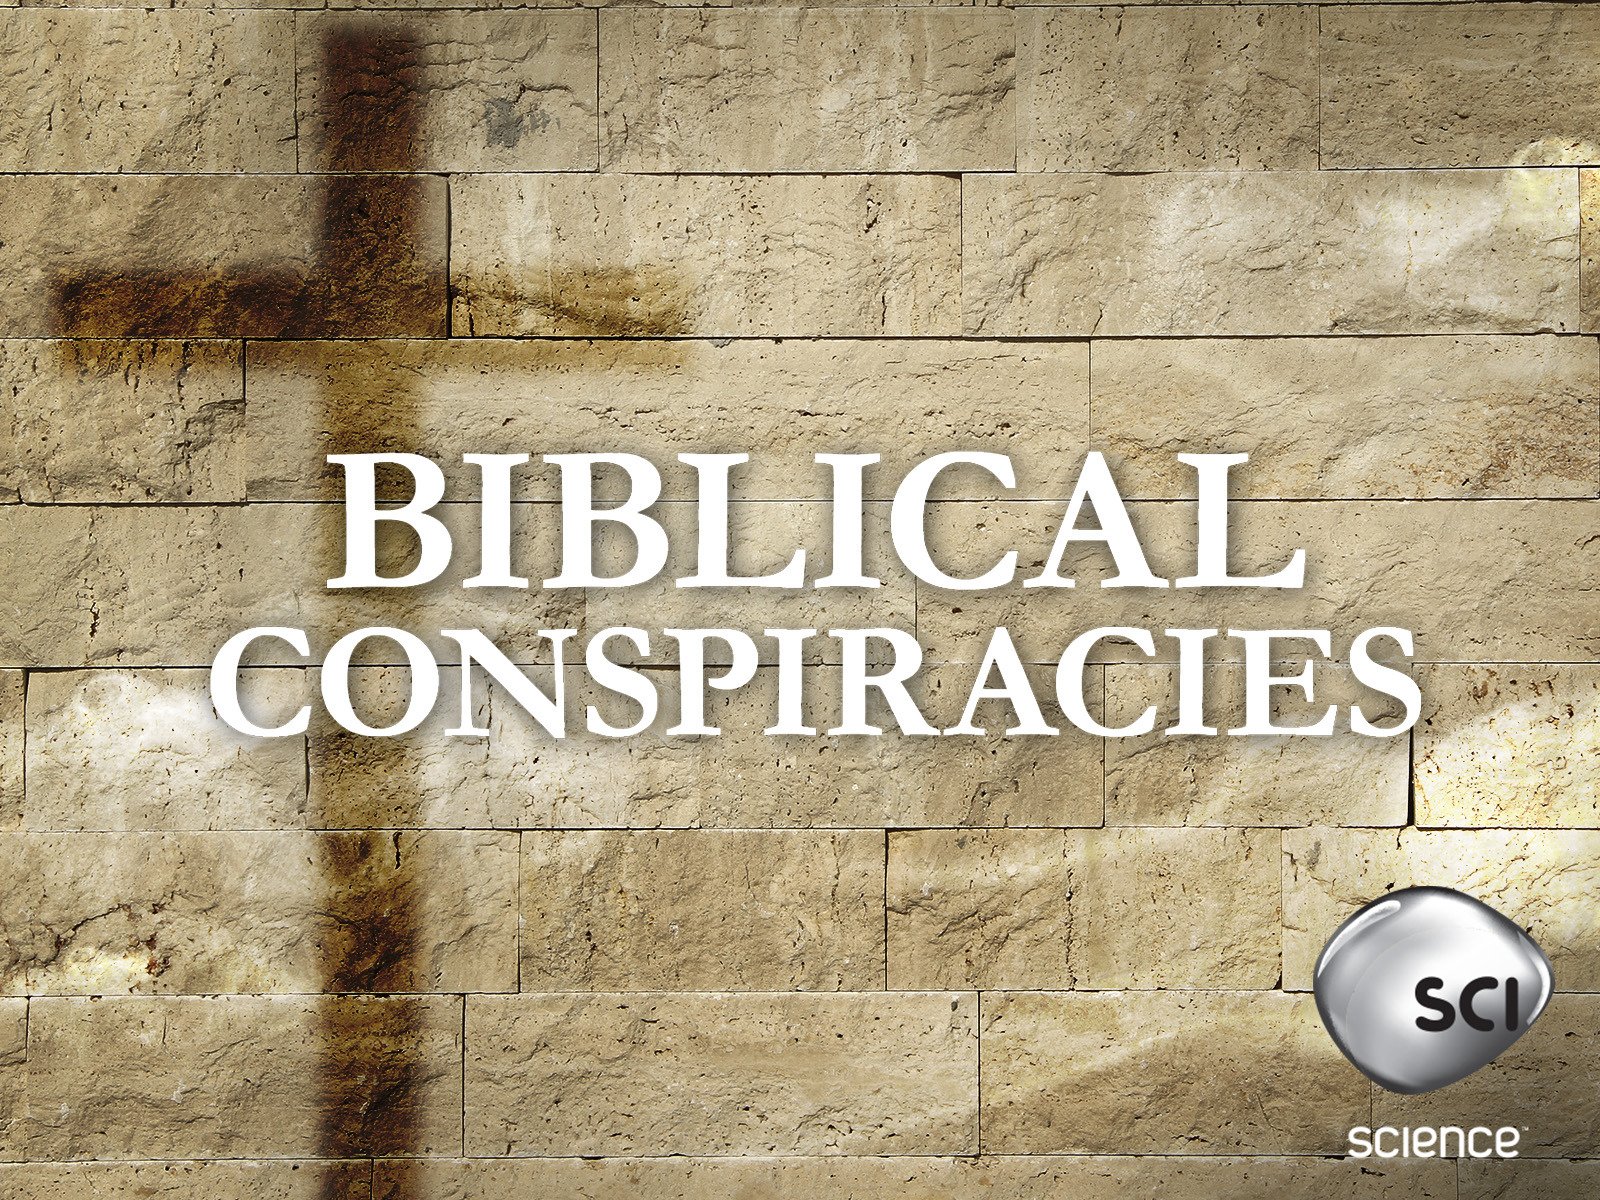 Caratula de BIBLICAL CONSPIRACIES (Conspiraciones bilicas) 